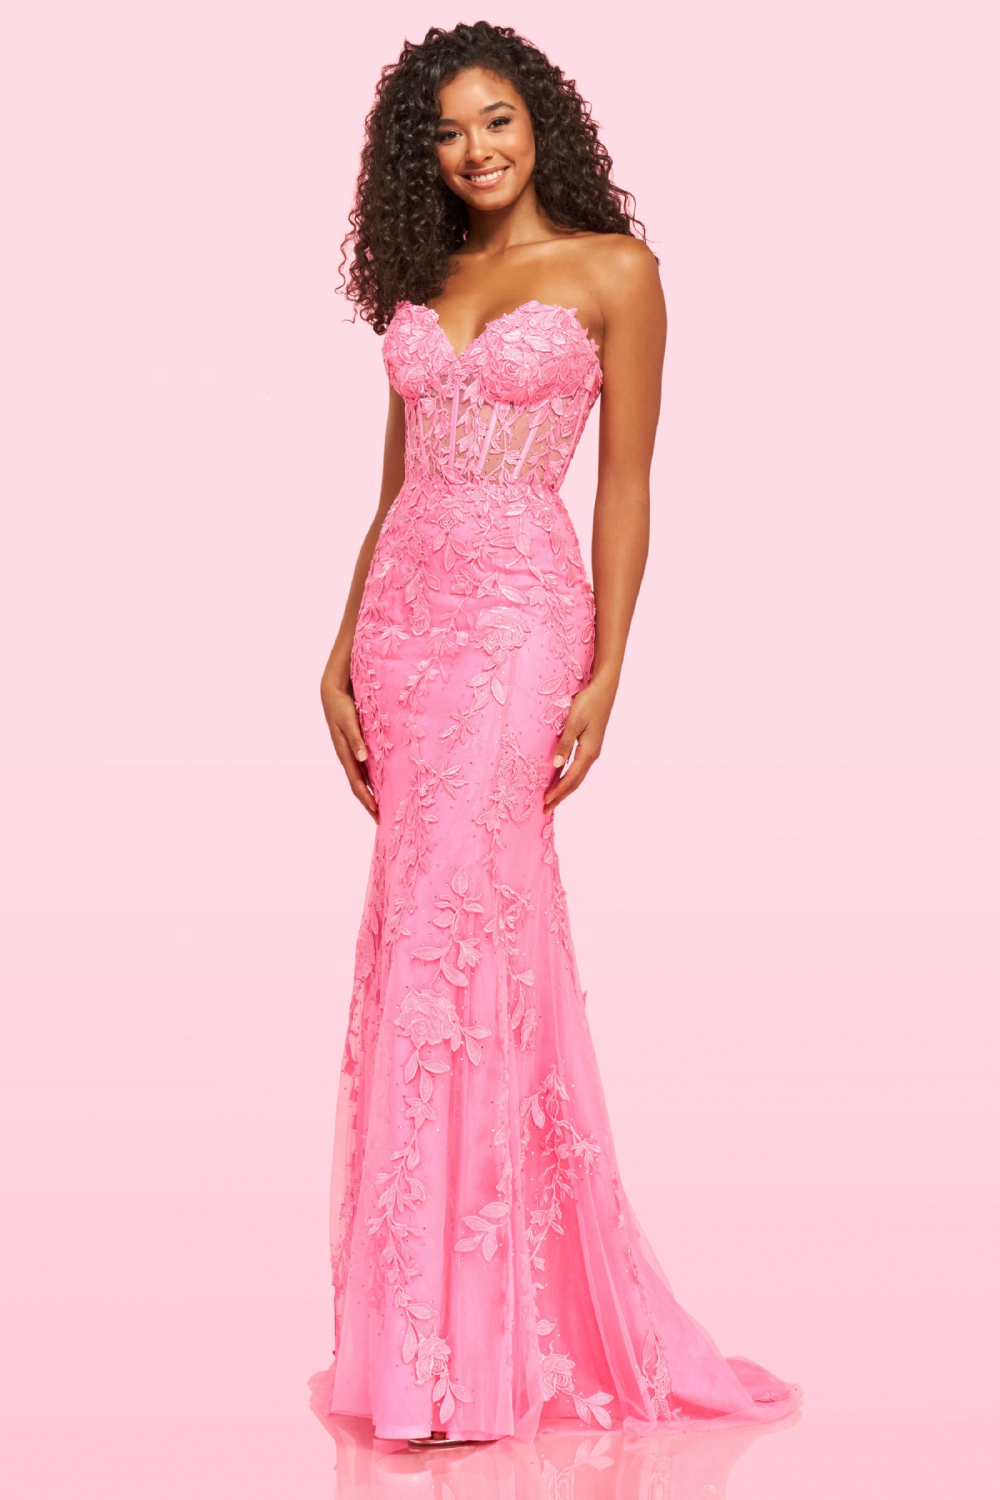 Model wearing a pink dress